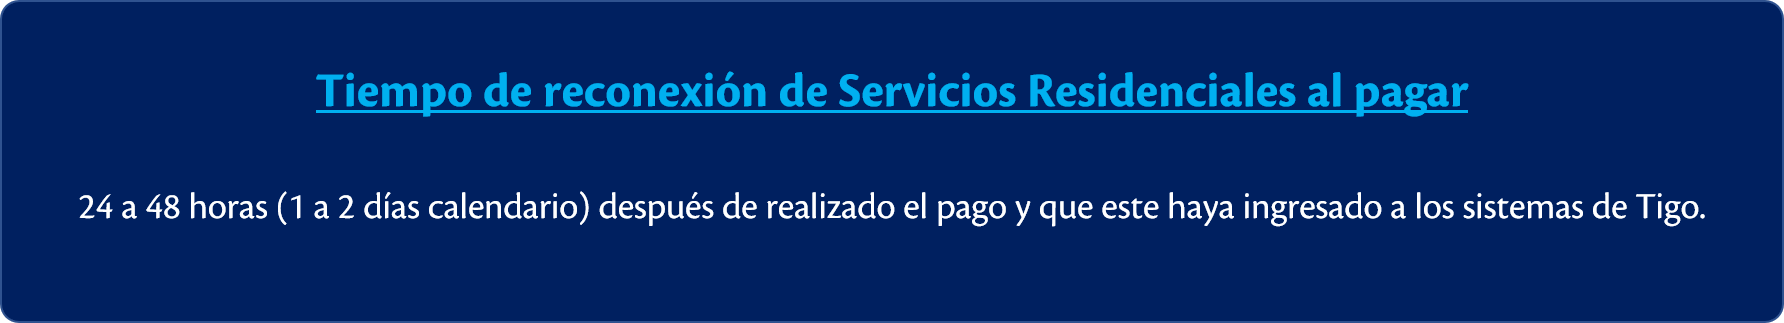 Suspensi_n_y_Reconexi_n_de_mis_Servicios_Residenciales_Tigo_2.png